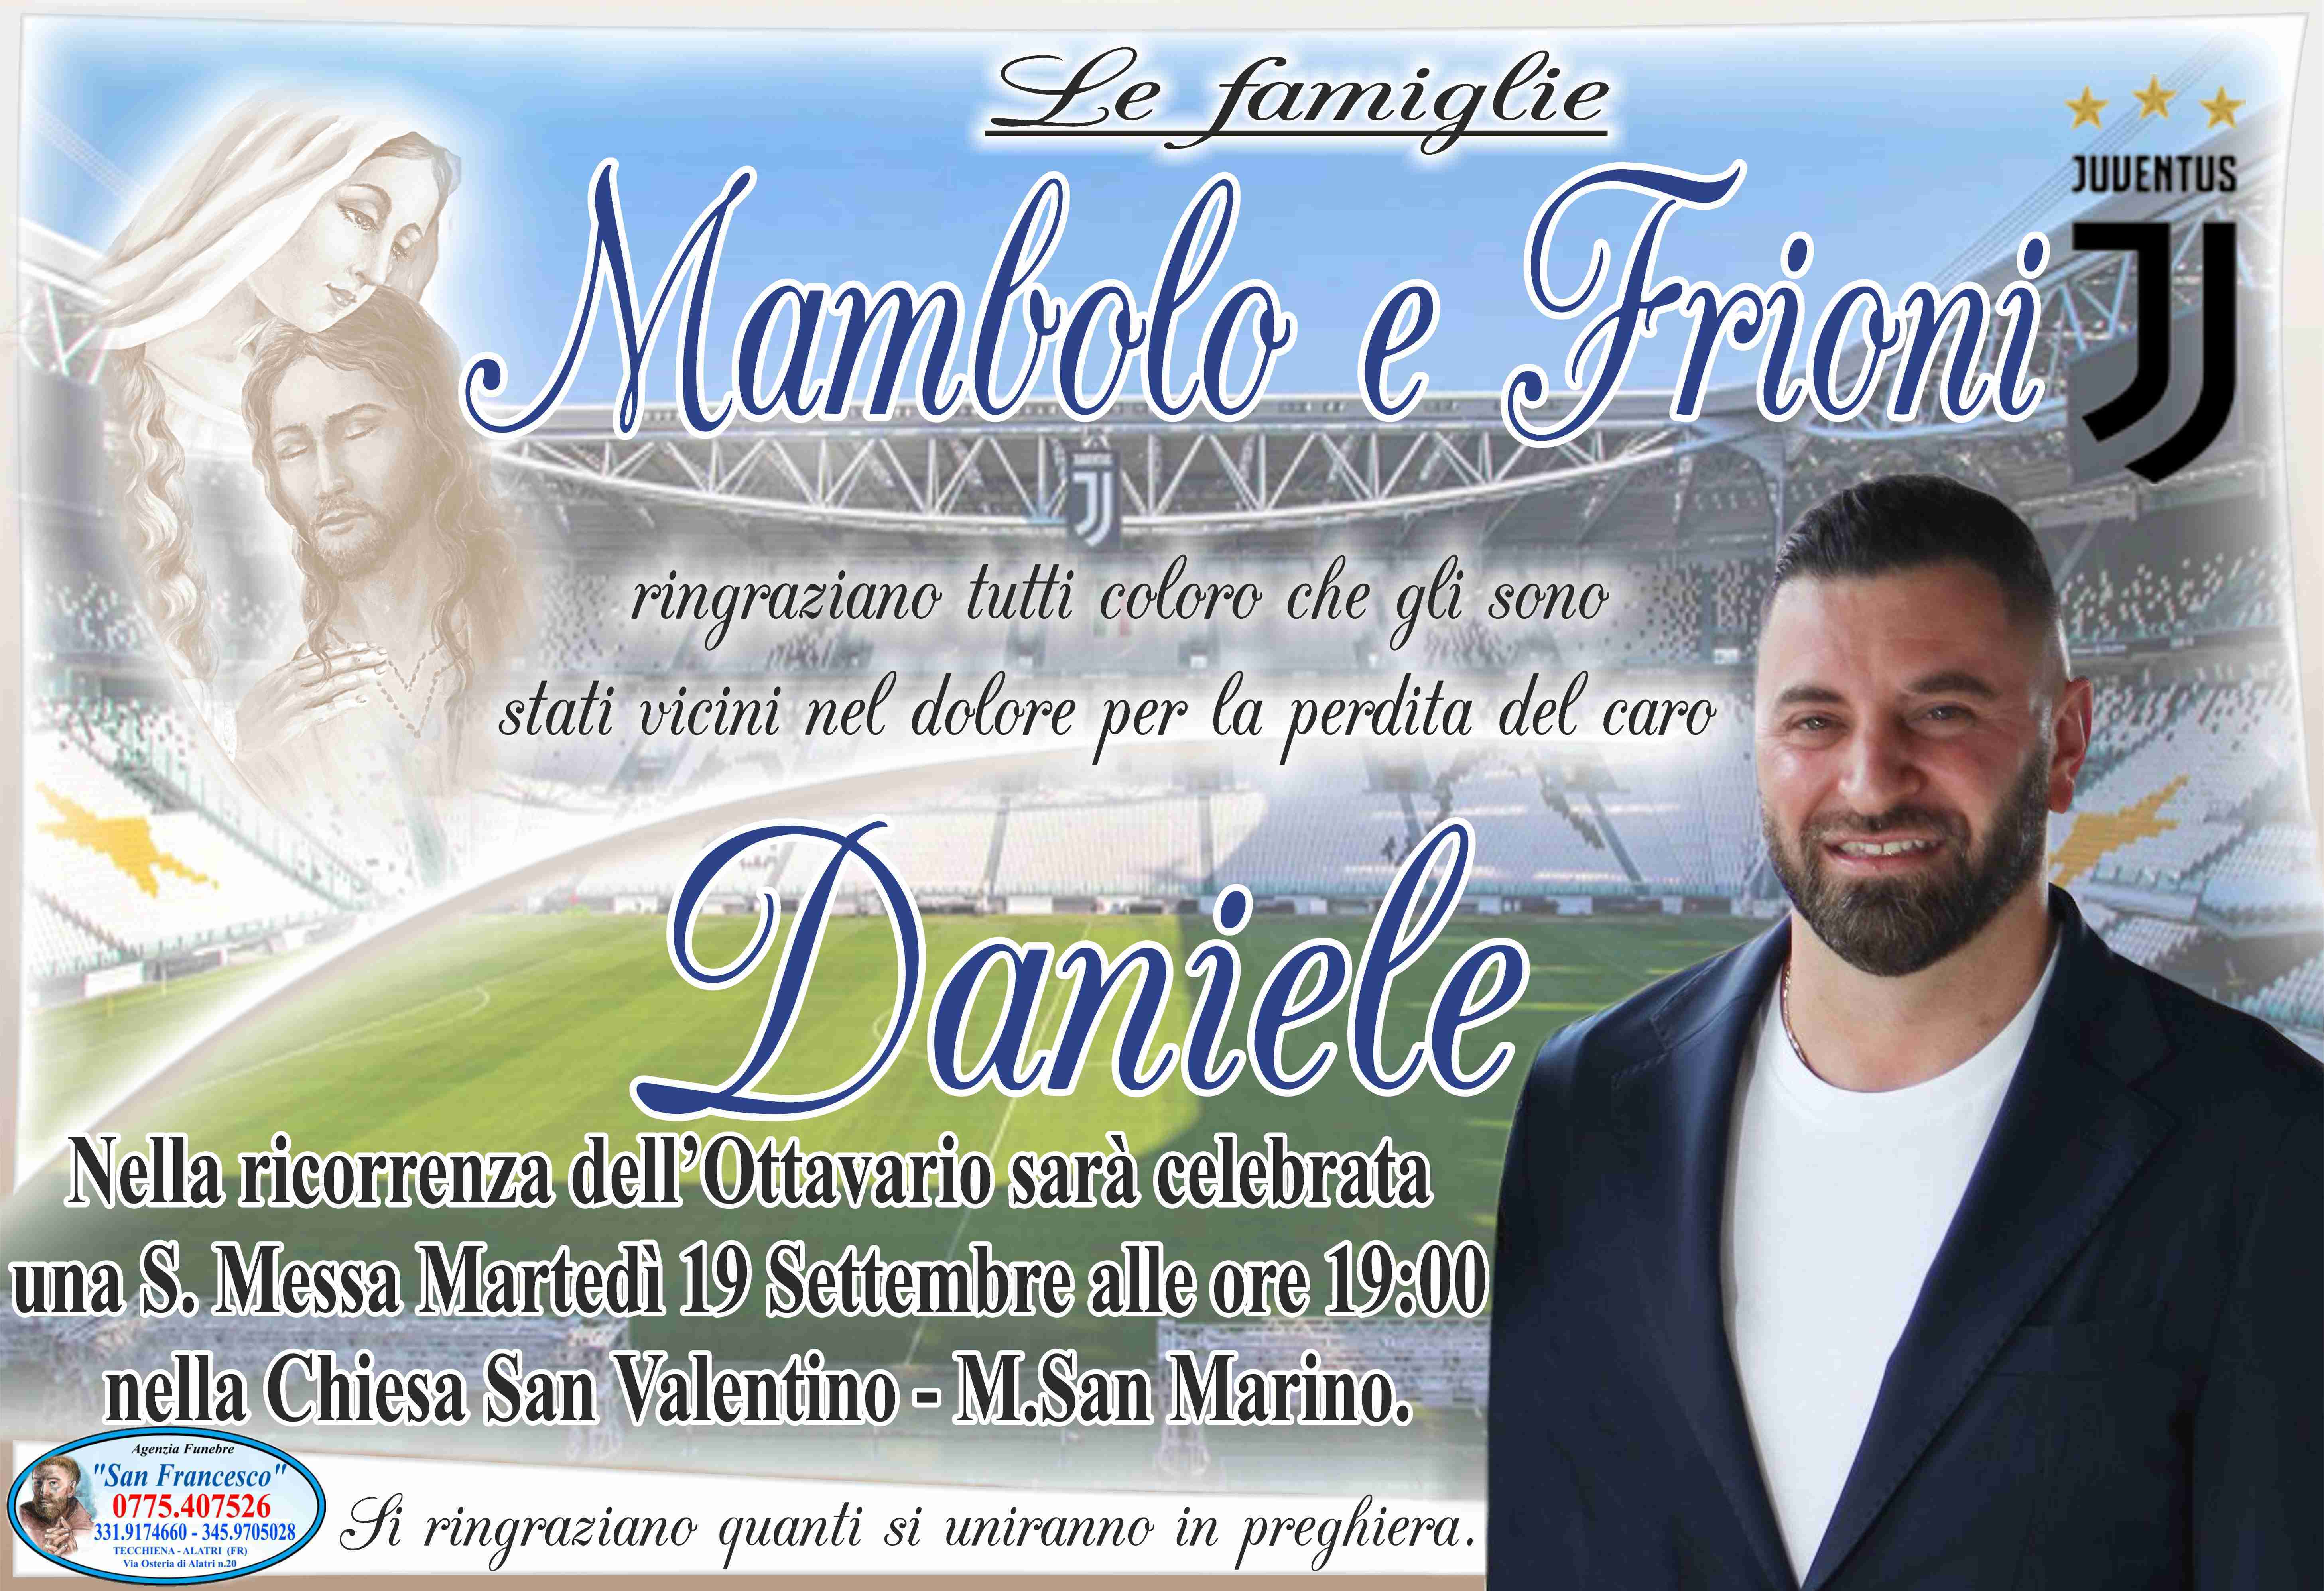 Daniele Mambolo